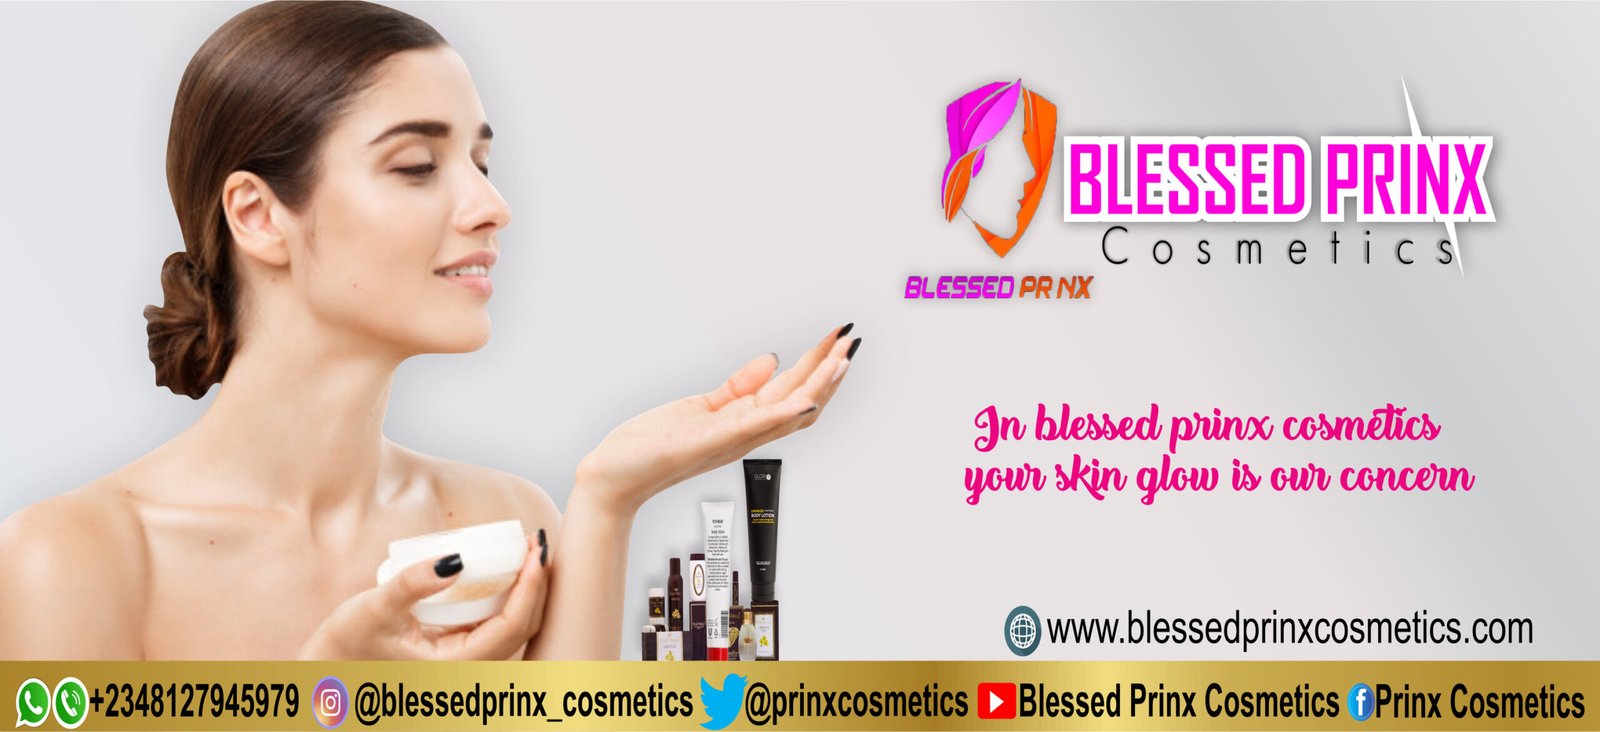 bLESSEPRINX Cosmetics 3